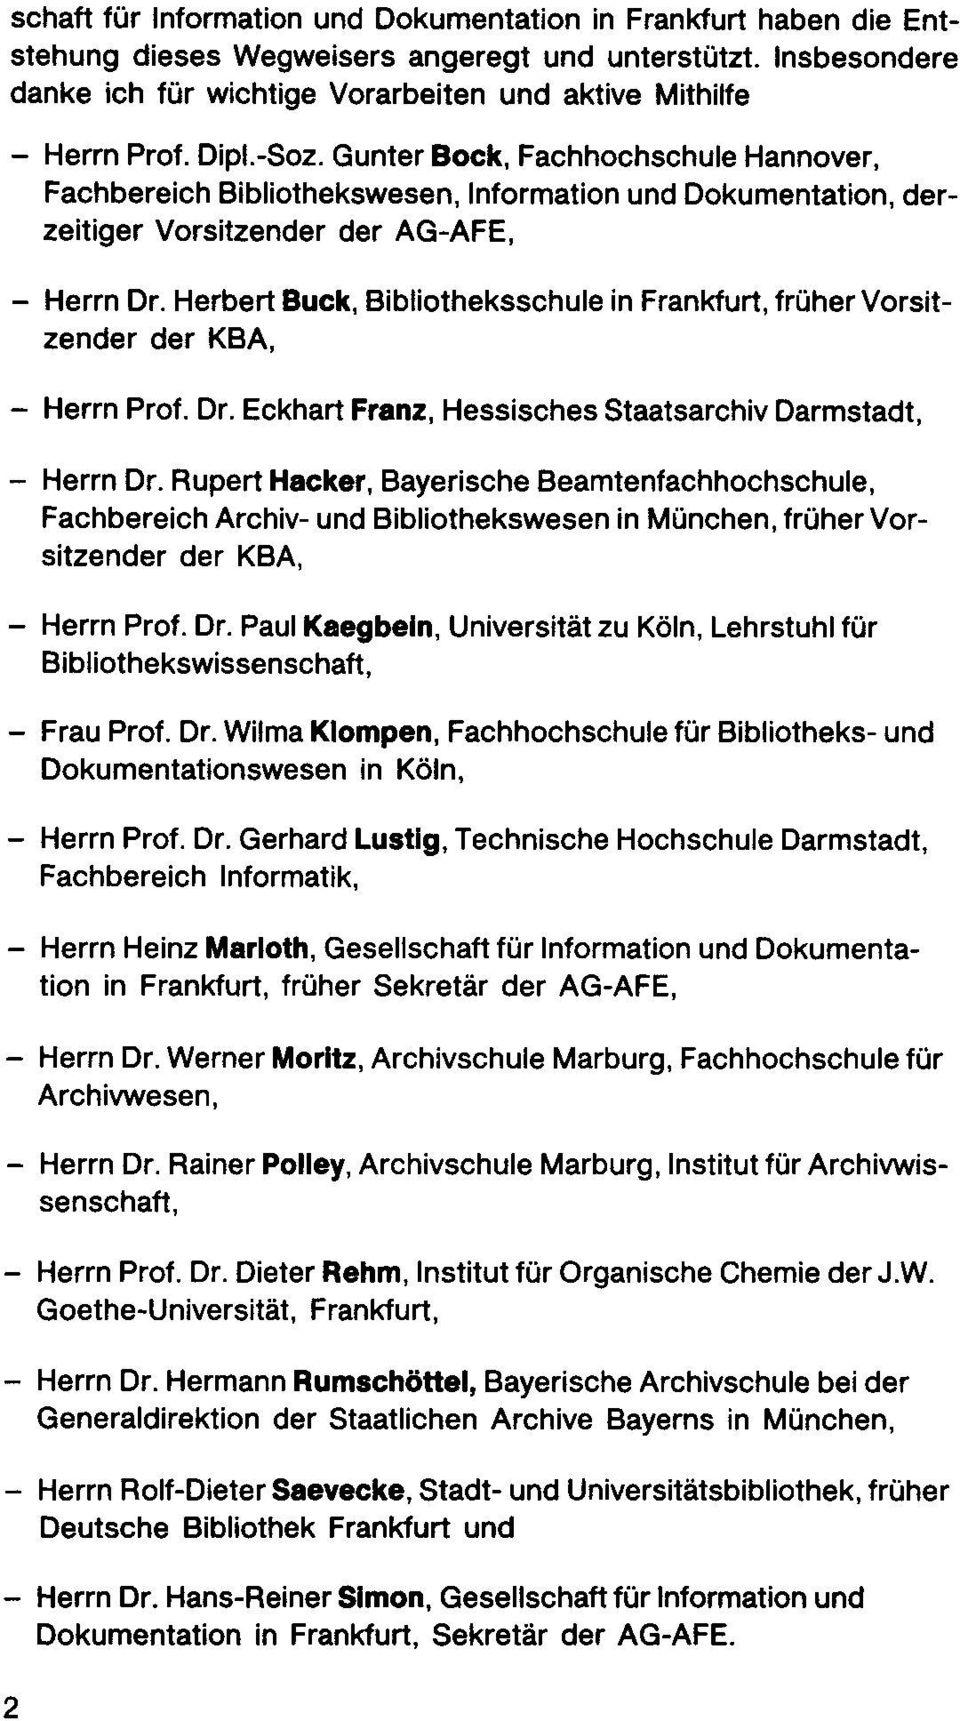 Herbert Buck, Bibliotheksschule in Frankfurt, fro her Vorsitzender der KBA, - Herm Prof. Dr. Eckhart Franz, Hessisches Staatsarchiv Darmstadt, - Herm Dr.